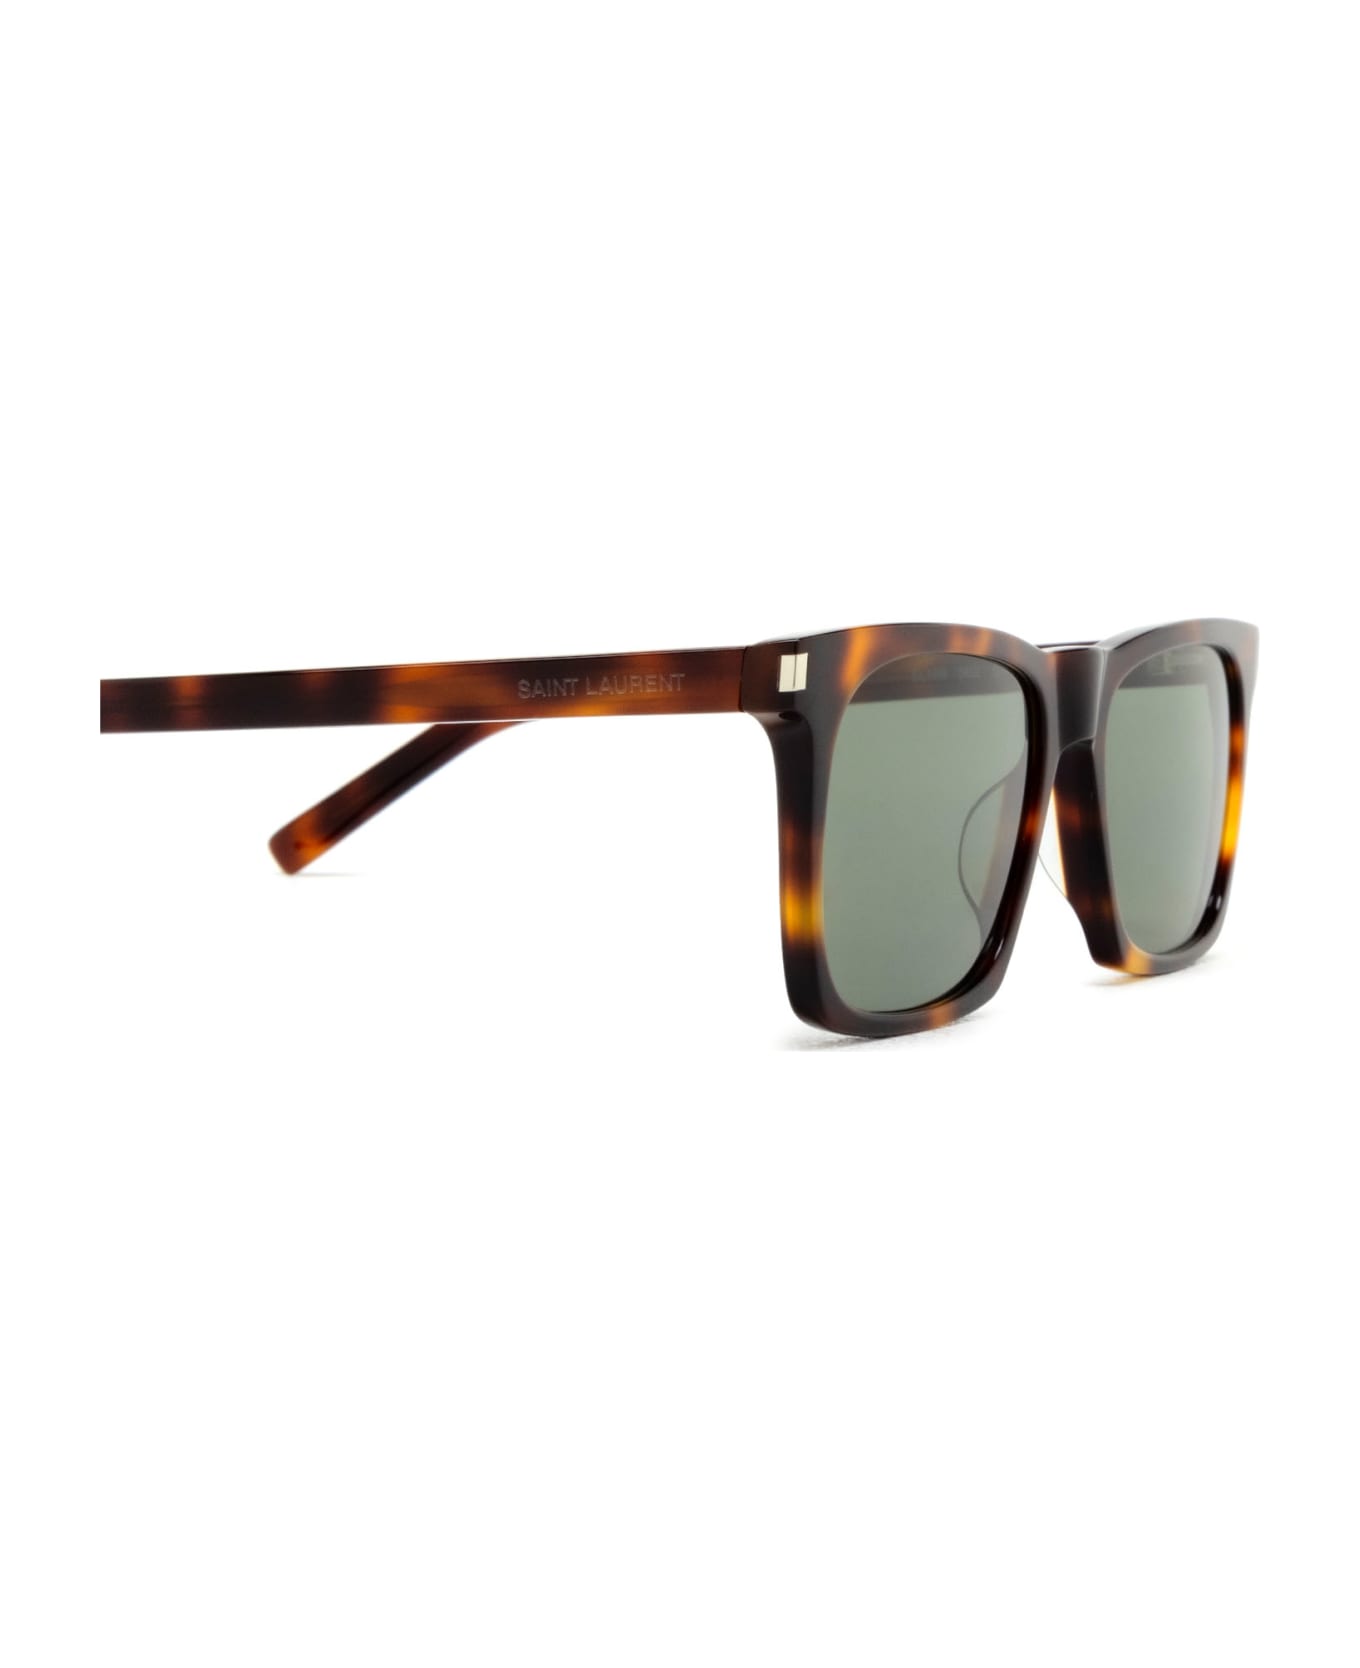 Saint Laurent Eyewear Sl 559 Havana Sunglasses - Havana